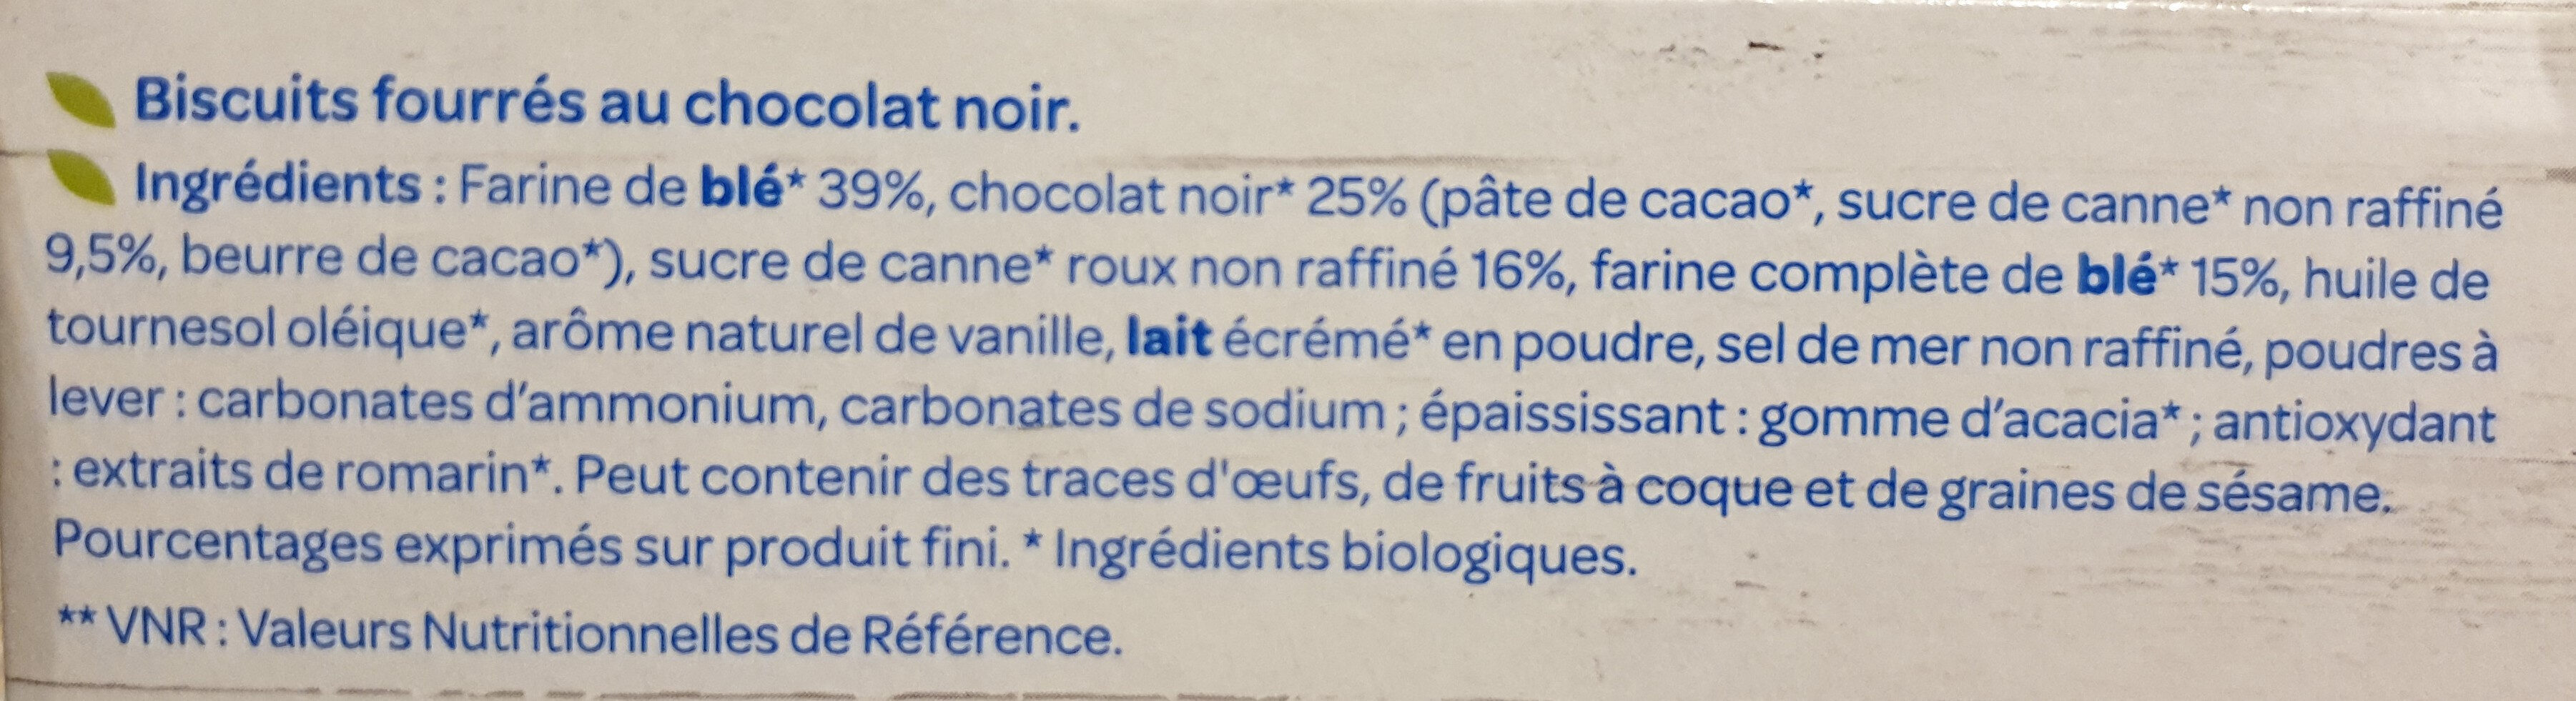 Fourrés Chocolat noir BIO - Ingredienser - fr